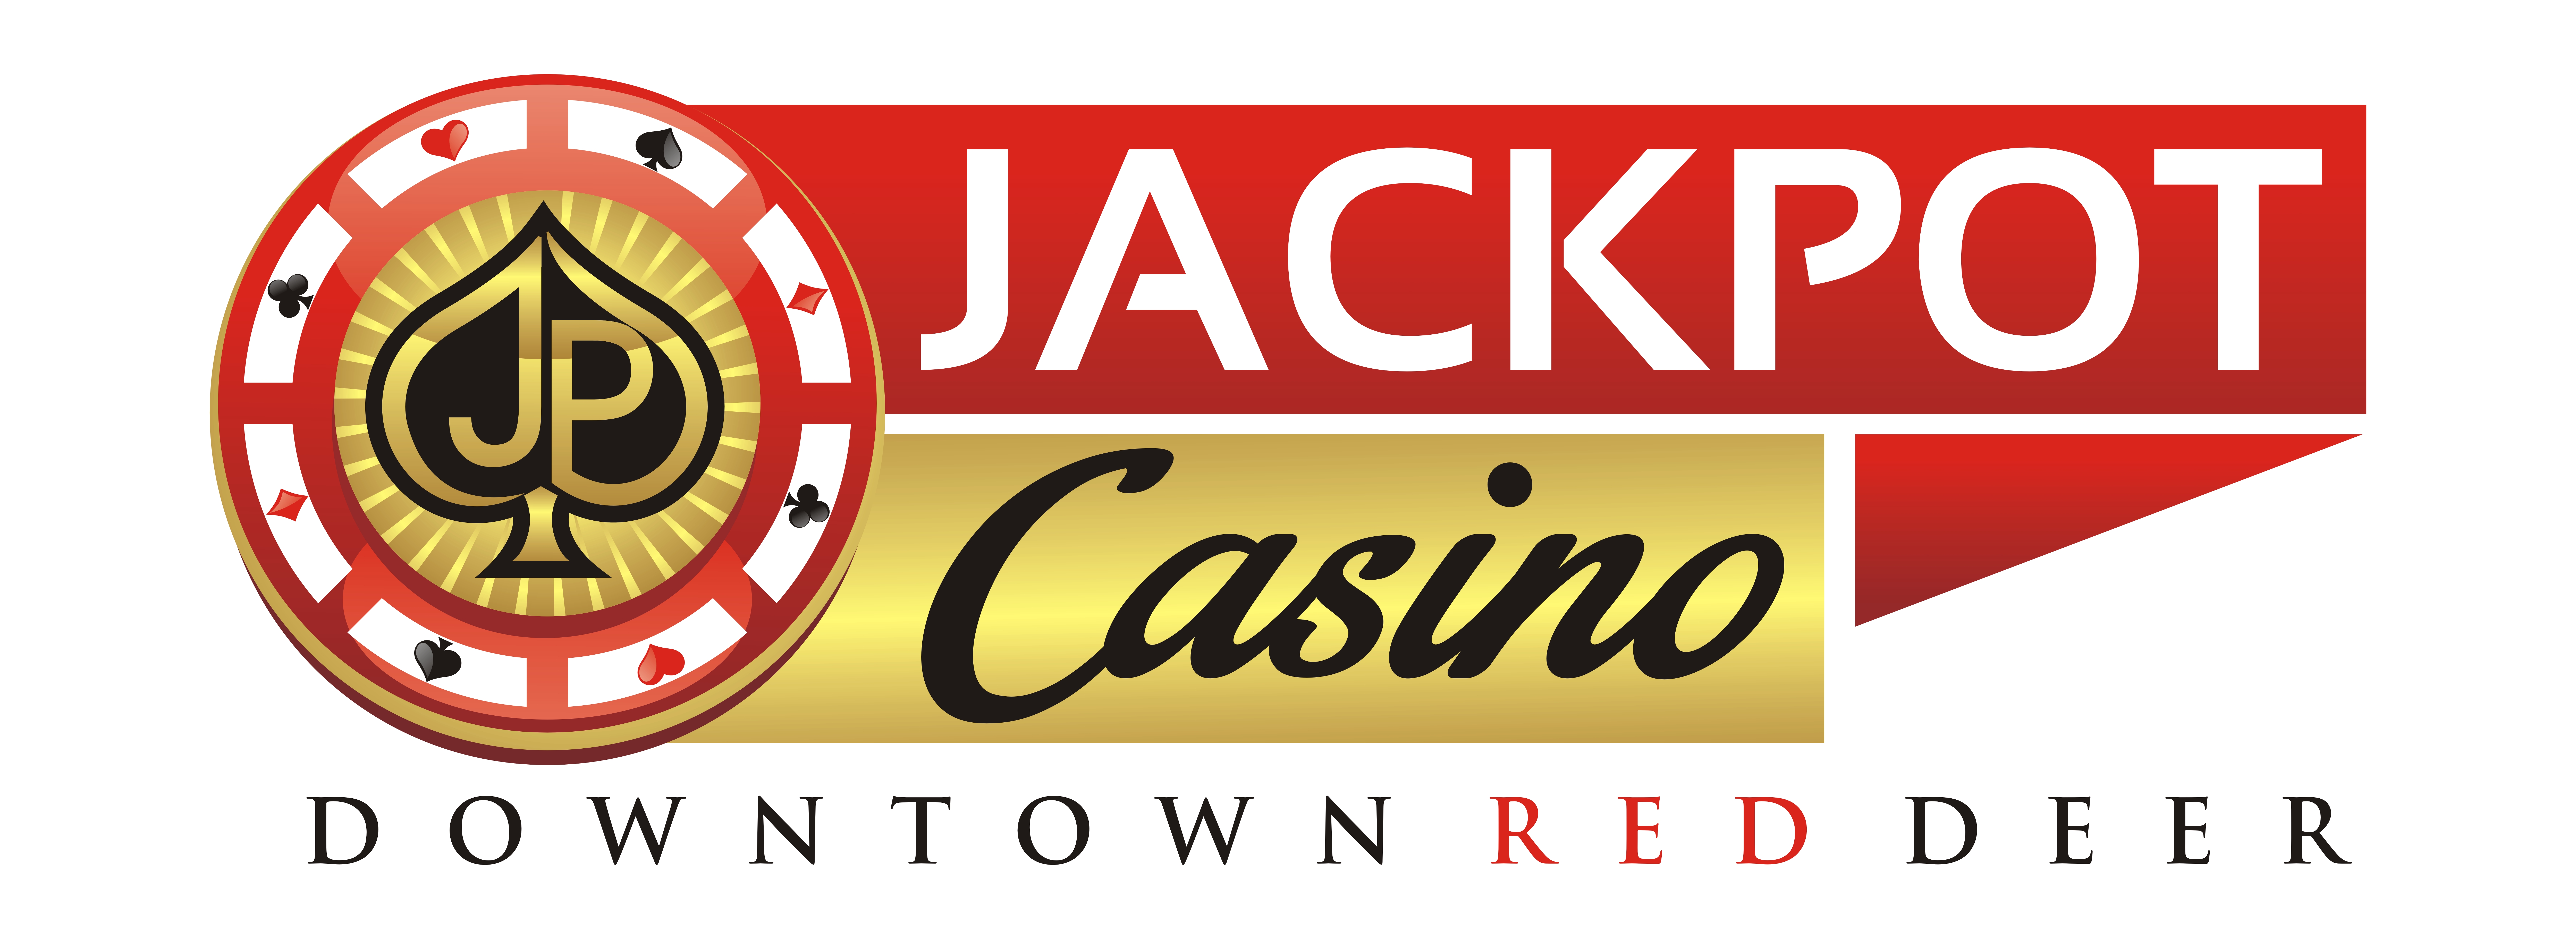 Jackpot Casino Downtown Red Deer logo